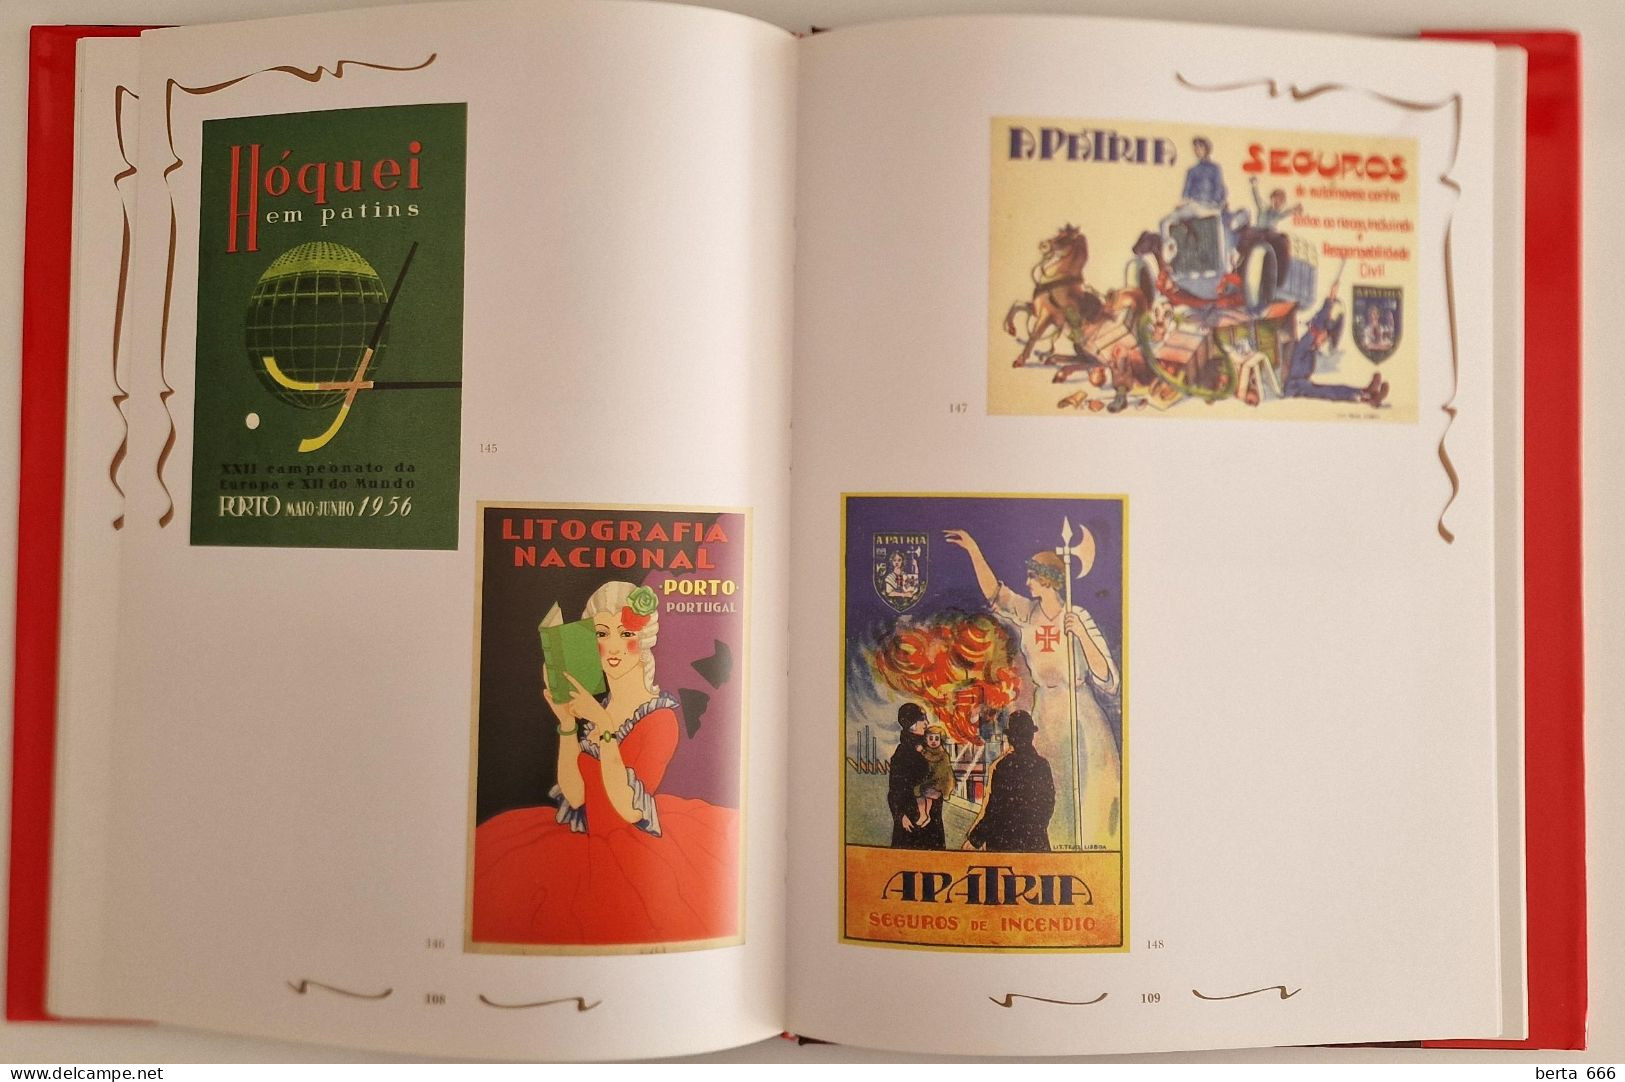 A Publicidade Em Portugal Através Do Bilhete Postal Ilustrado * Livro Capa Dura - Cultural